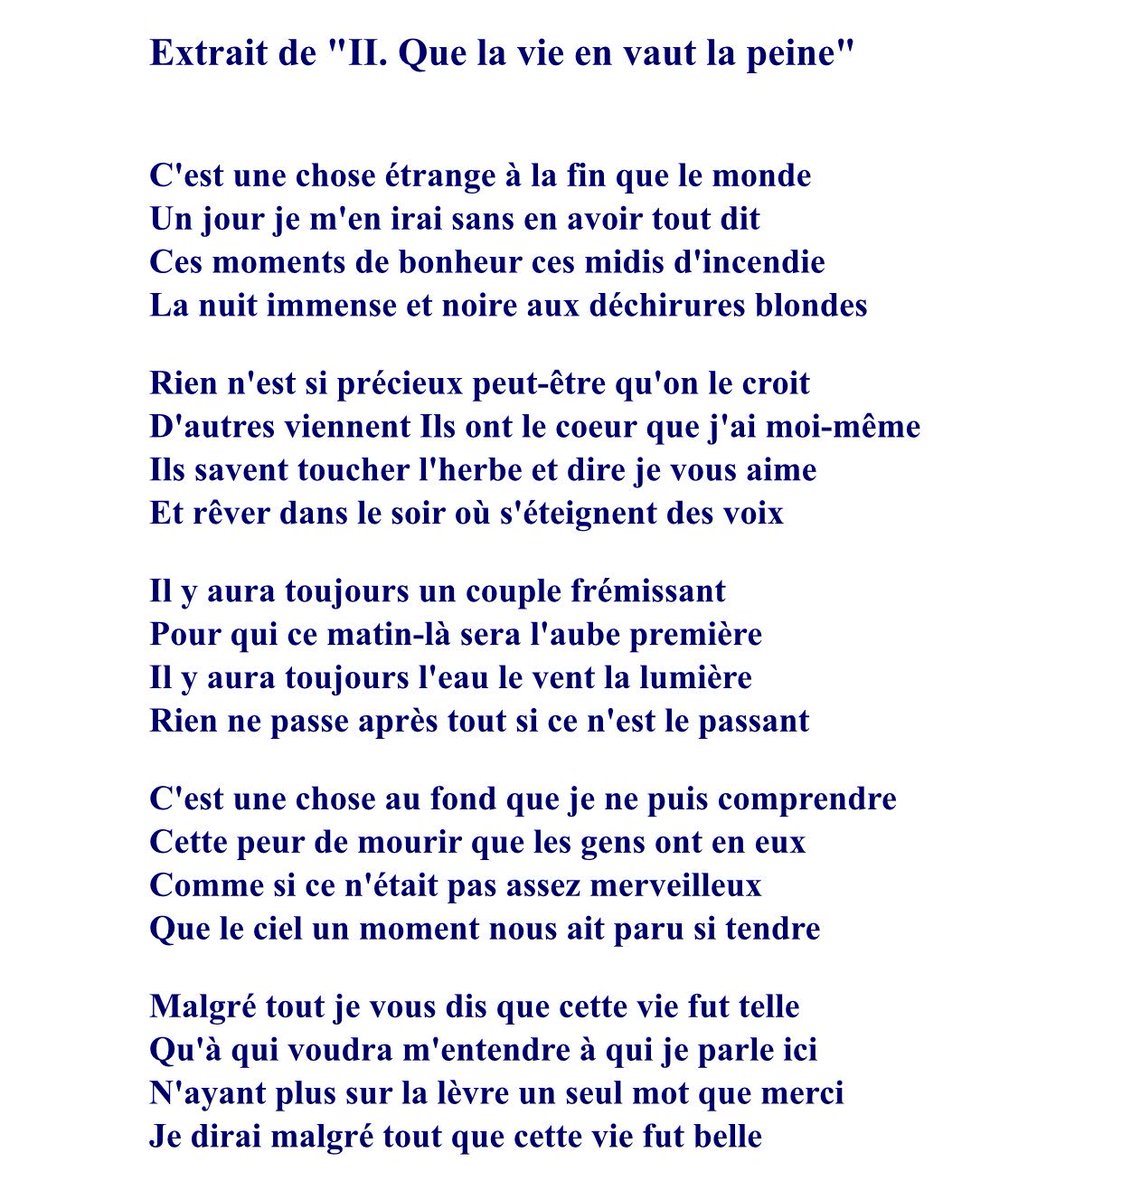 Victoria 🌿 on Twitter: "Jean d'Ormesson pour moi sera toujours associé à  ce sublime poème d'Aragon, son hymne de vie ❤️ https://t.co/69DiBL6rq8" /  Twitter